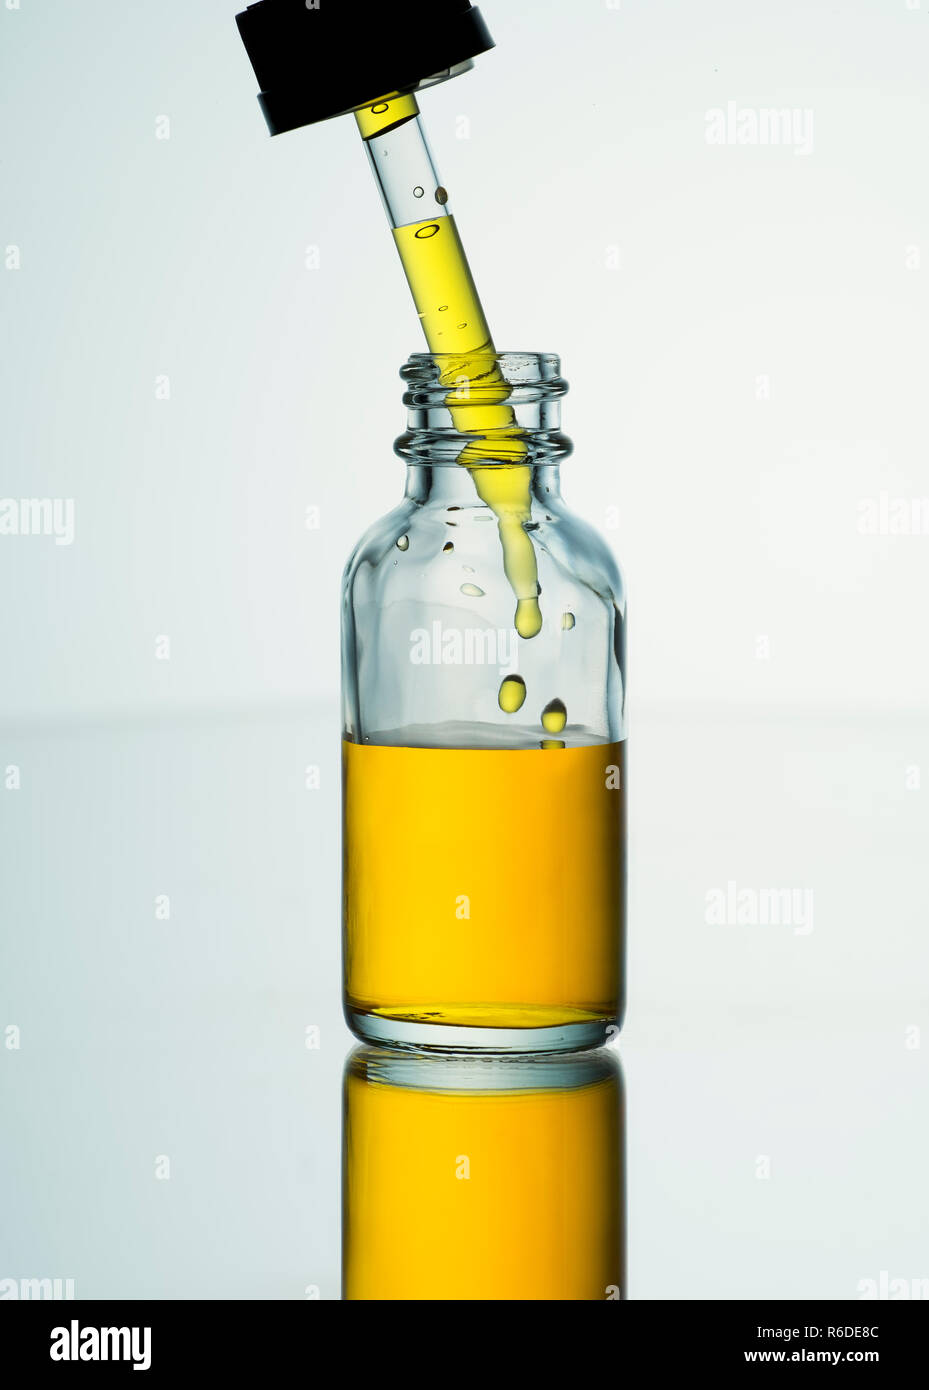 Près d'un petit pot ouvert contenant un liquide doré avec verre pipette dropping in liquid Banque D'Images